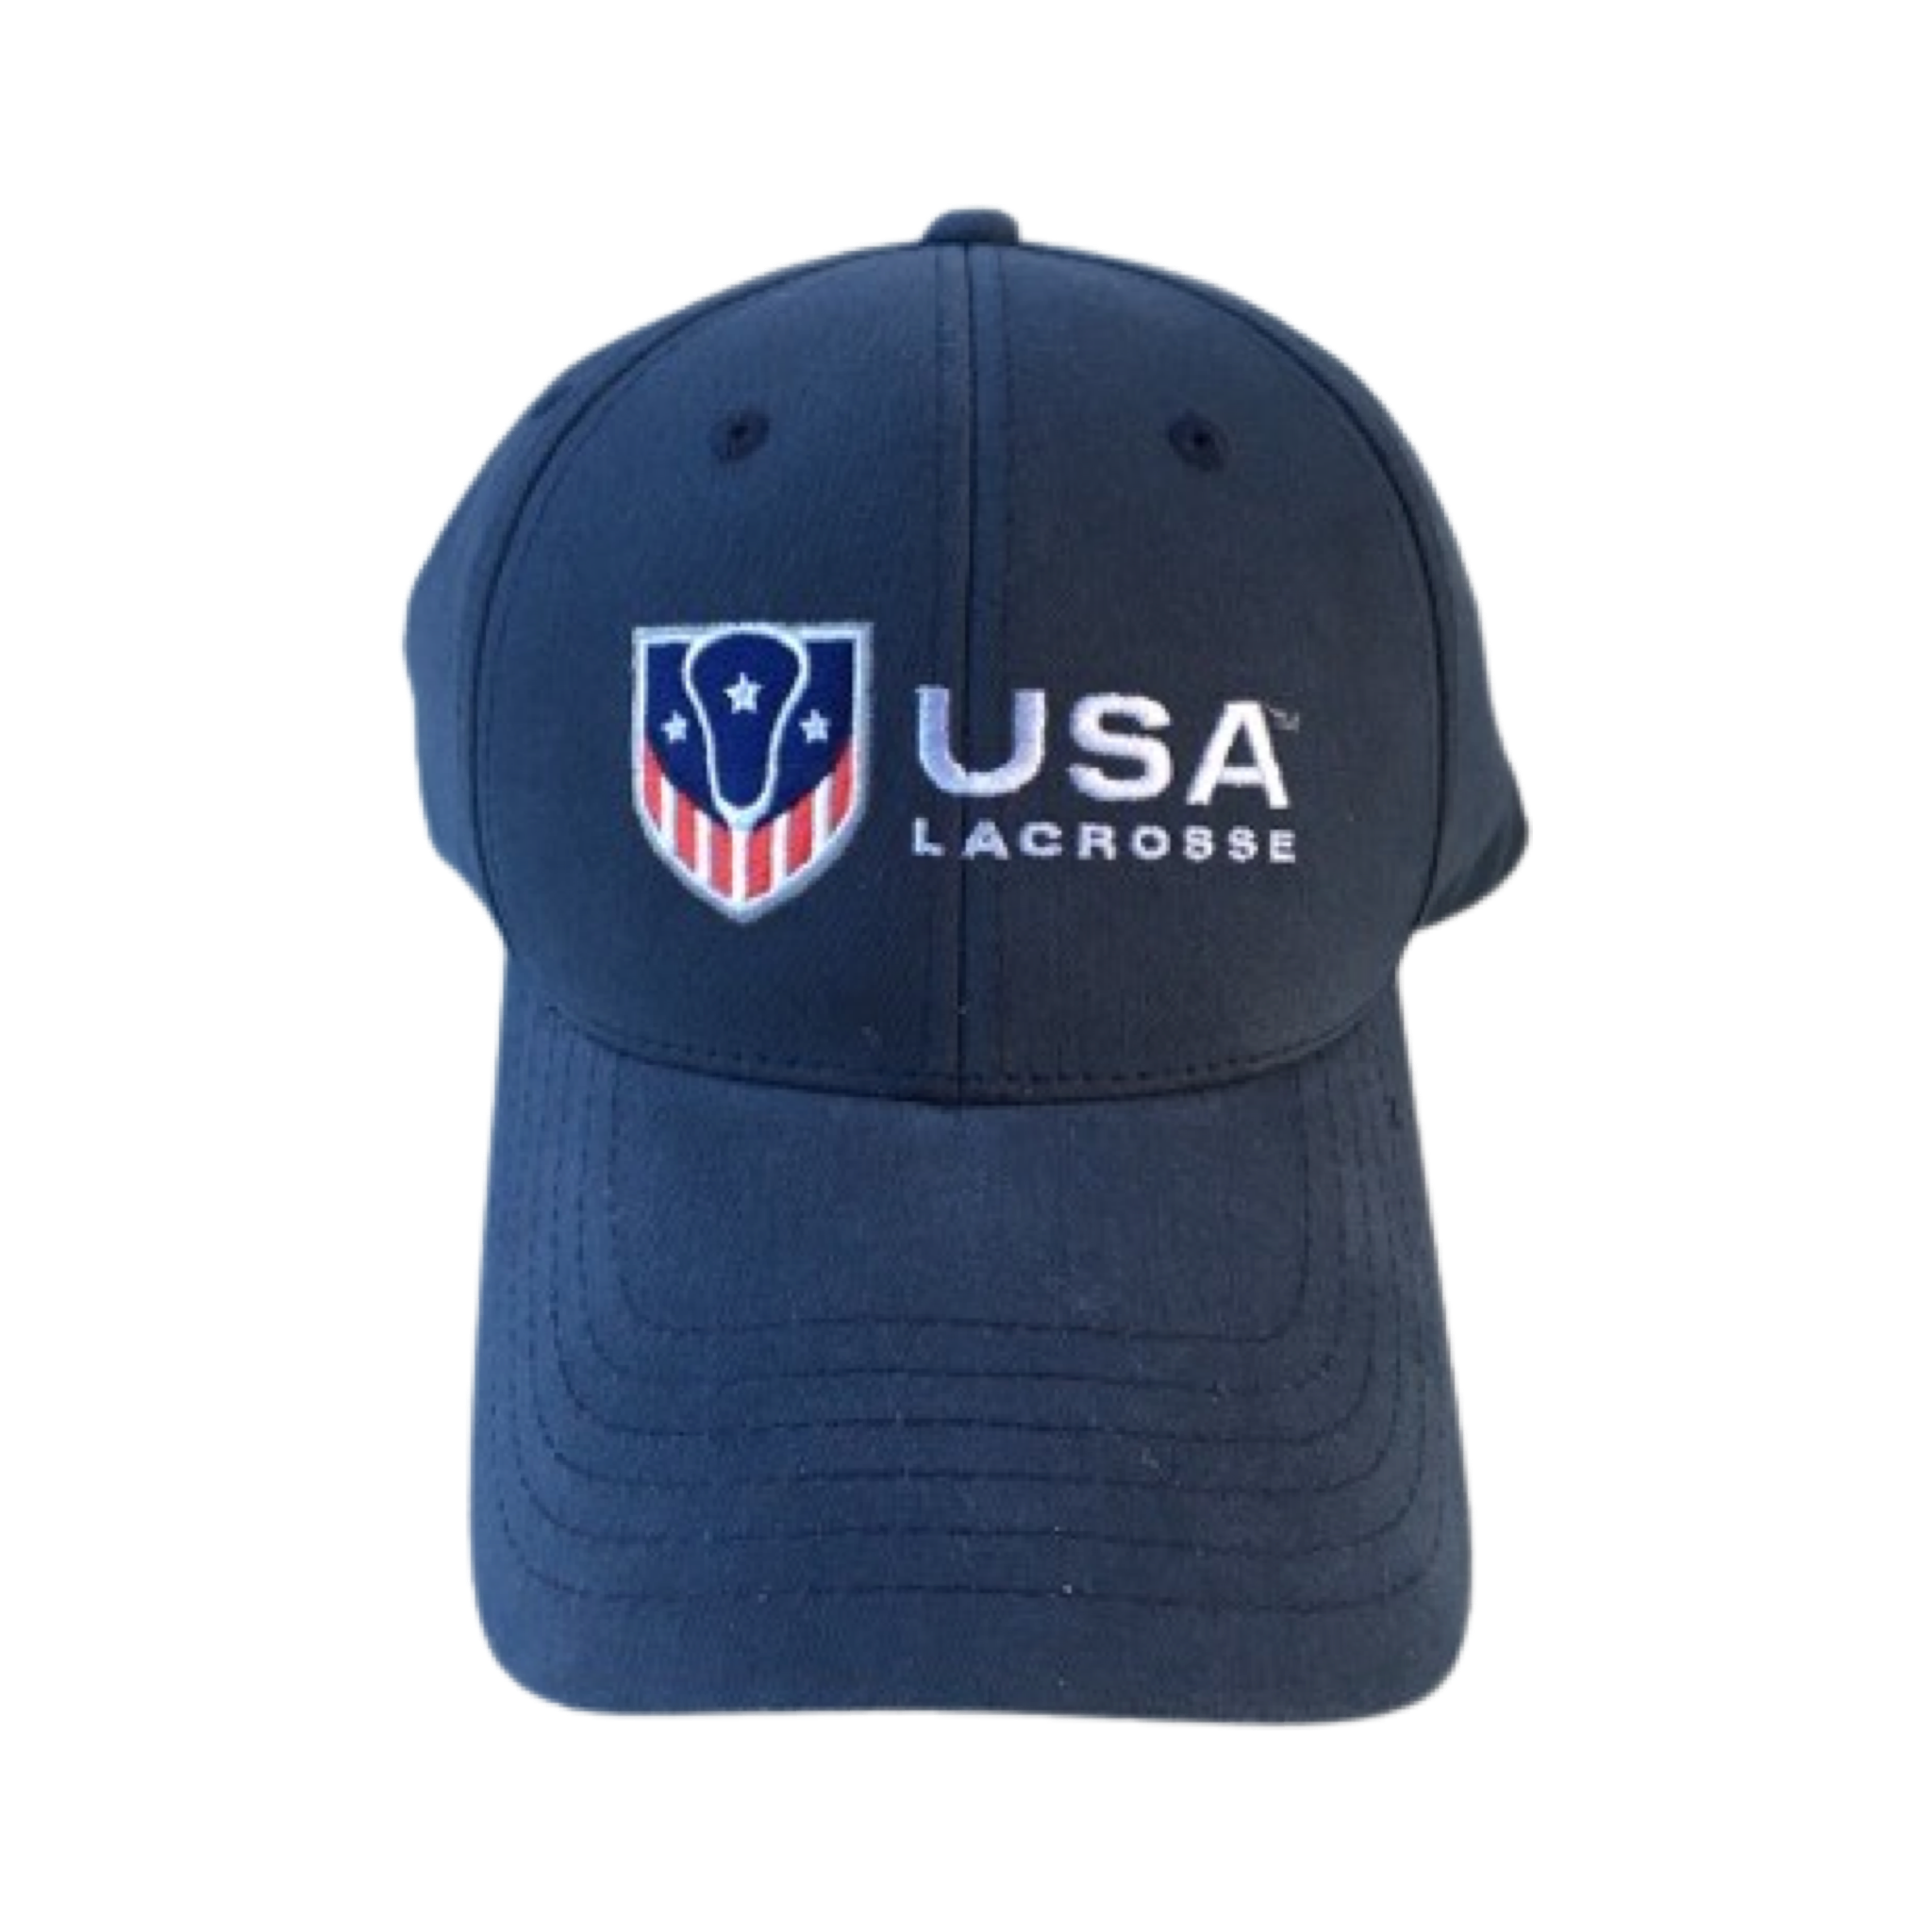 USA Lacrosse Cotton Hat